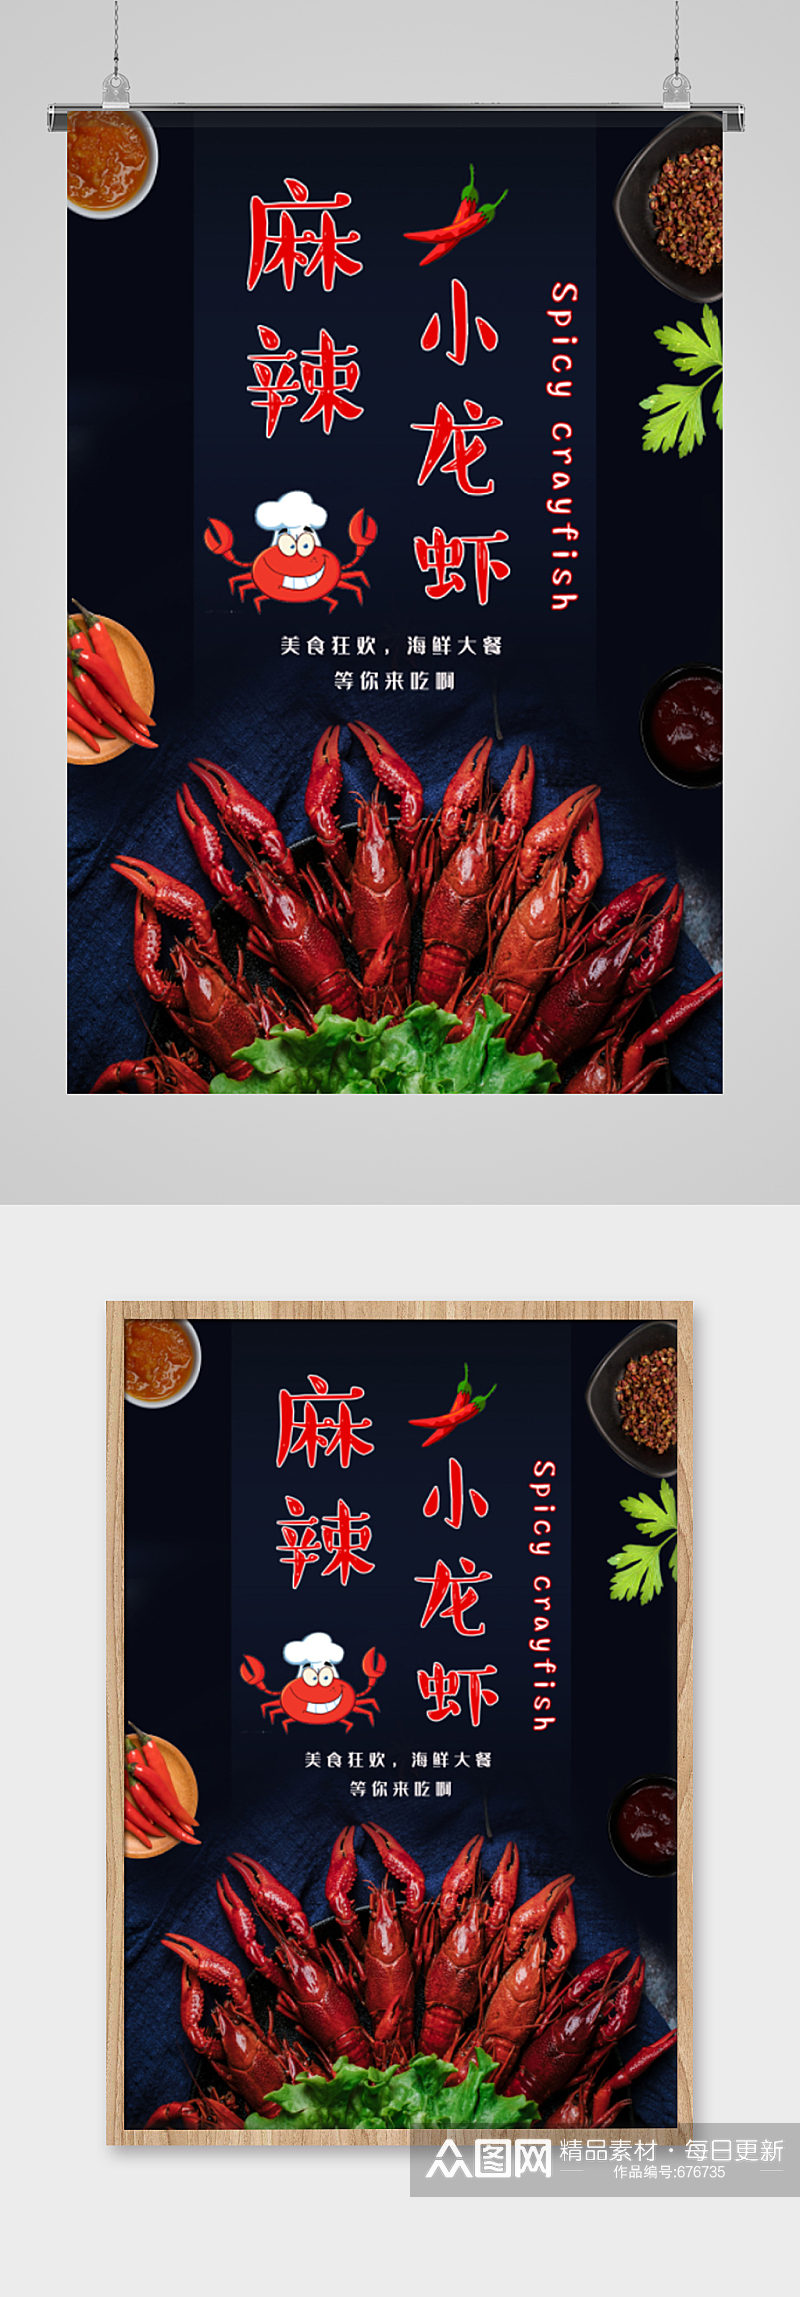 麻辣小龙虾海鲜大餐海报素材